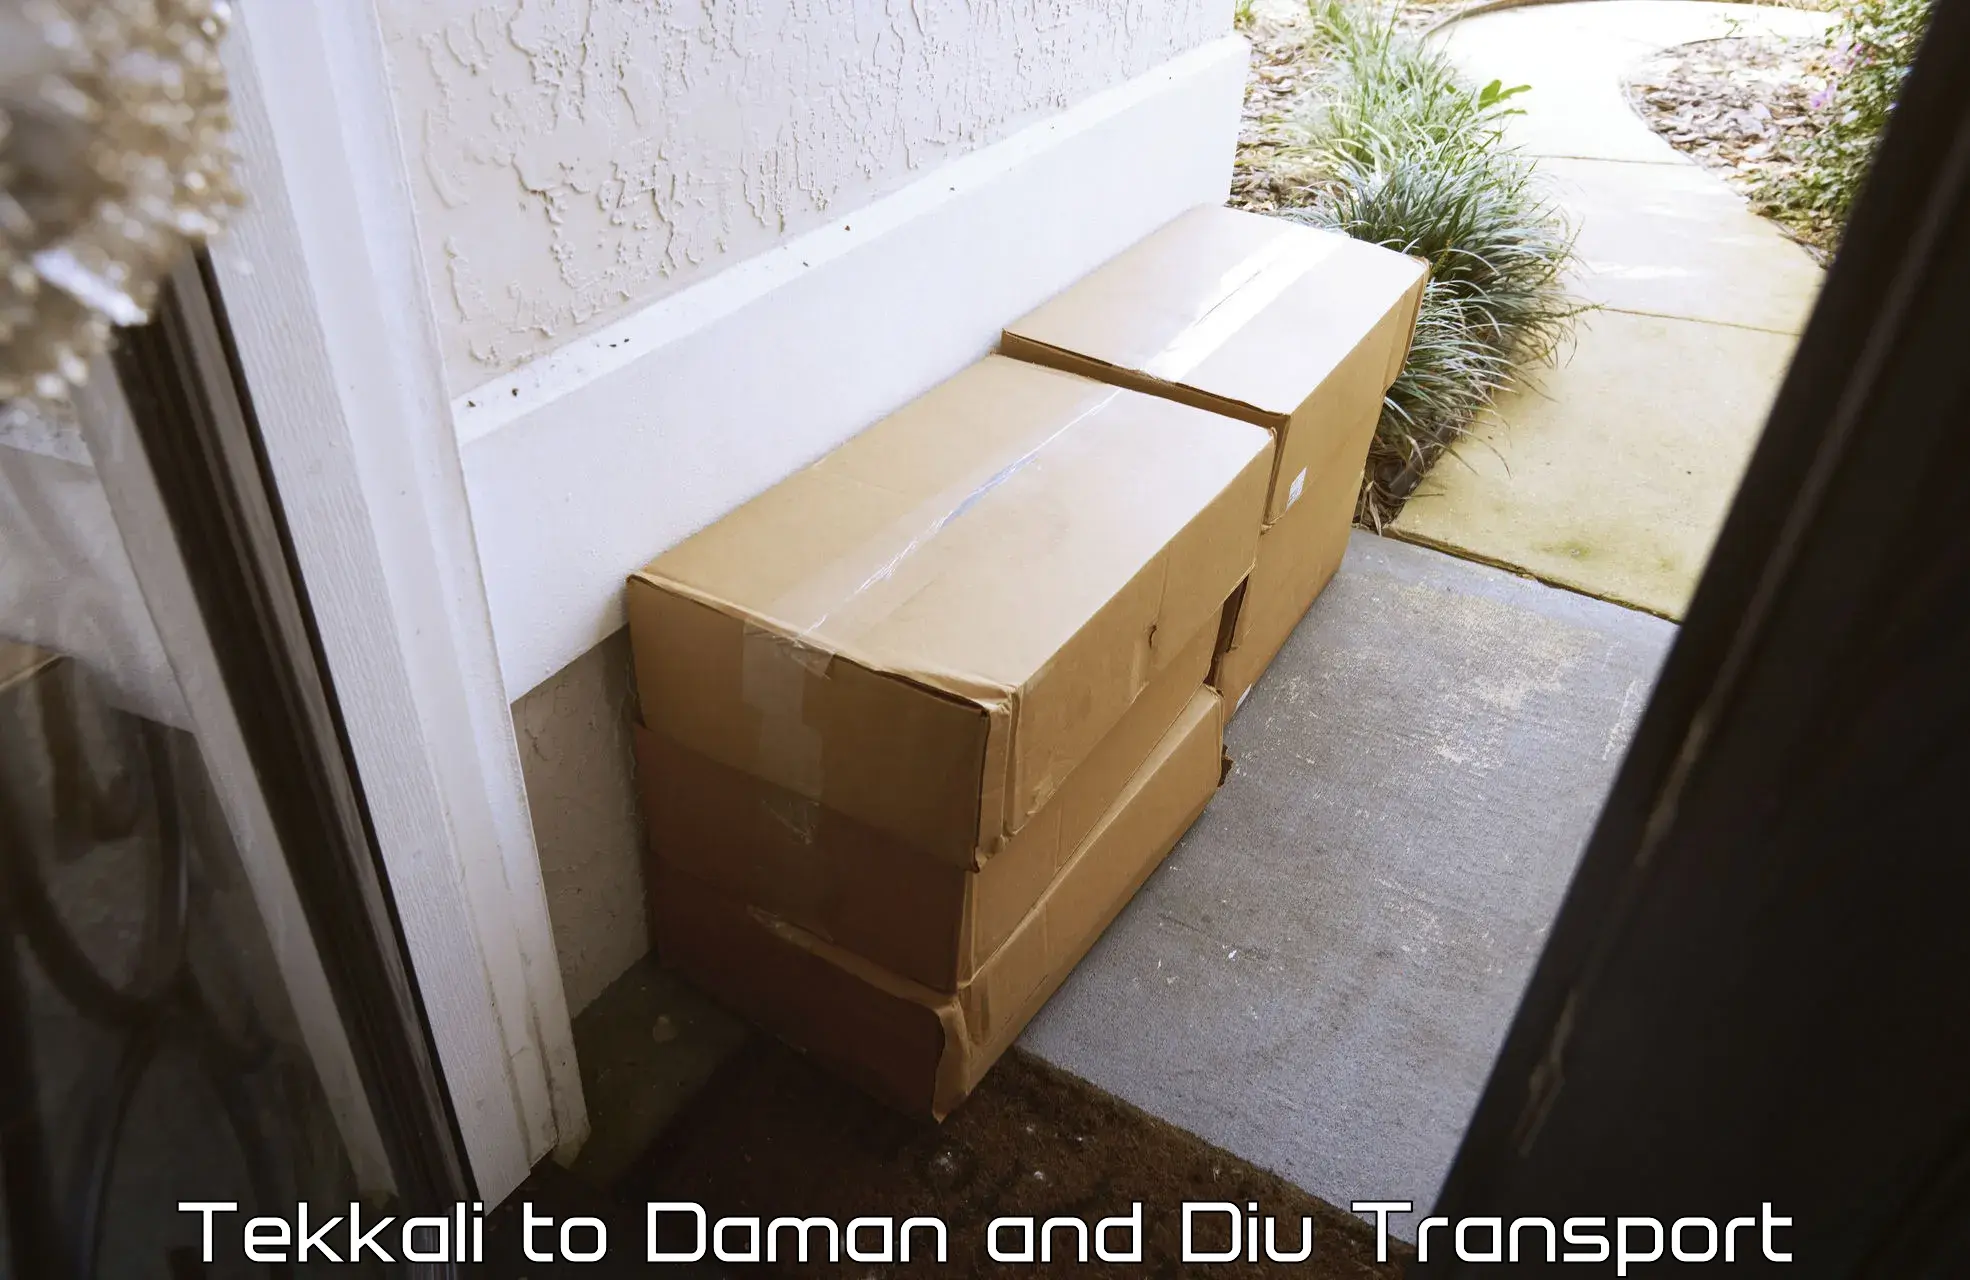 Pick up transport service Tekkali to Daman